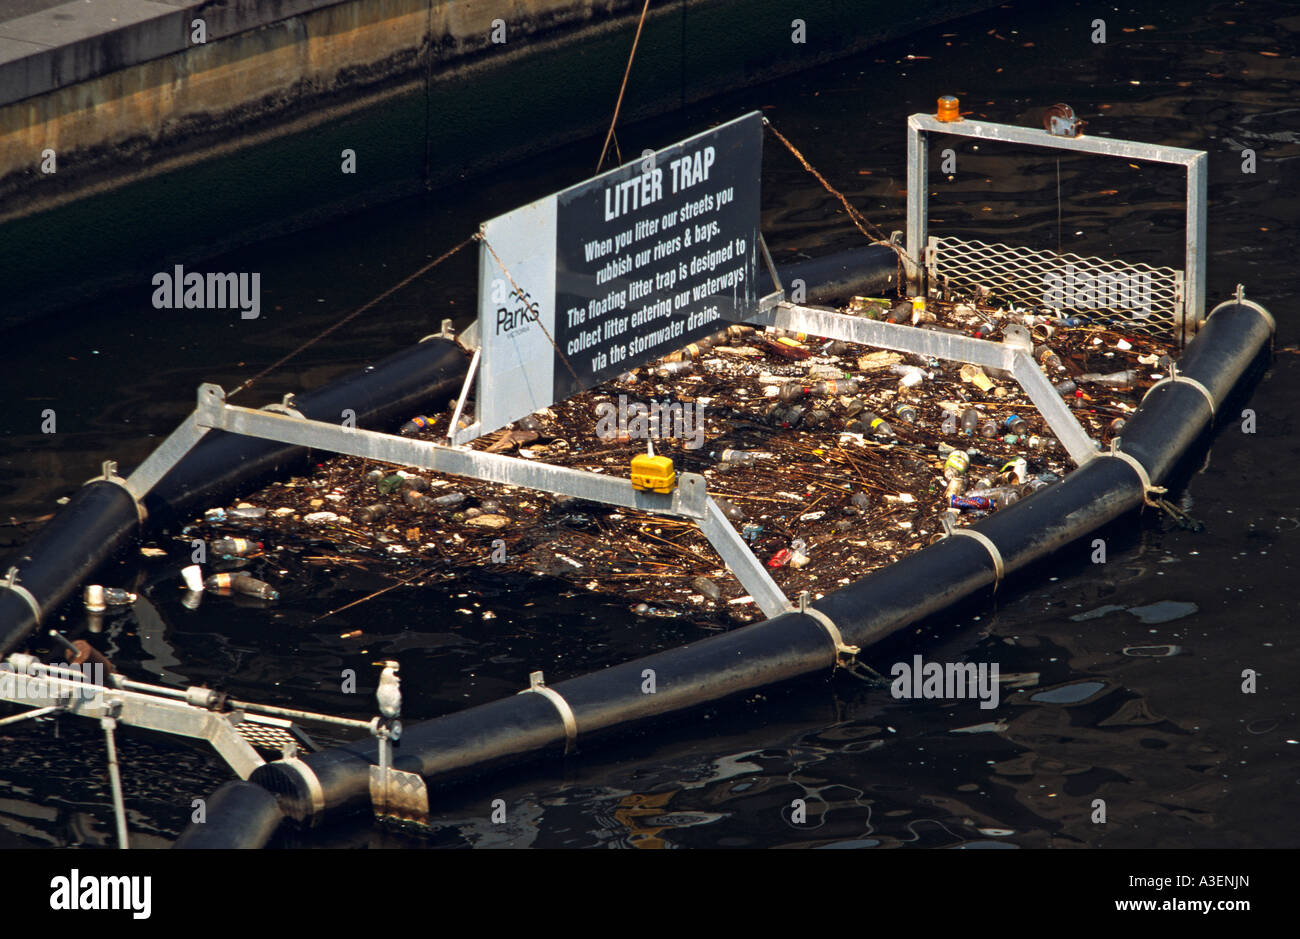 River litter trap, Melbourne Australia Stock Photo